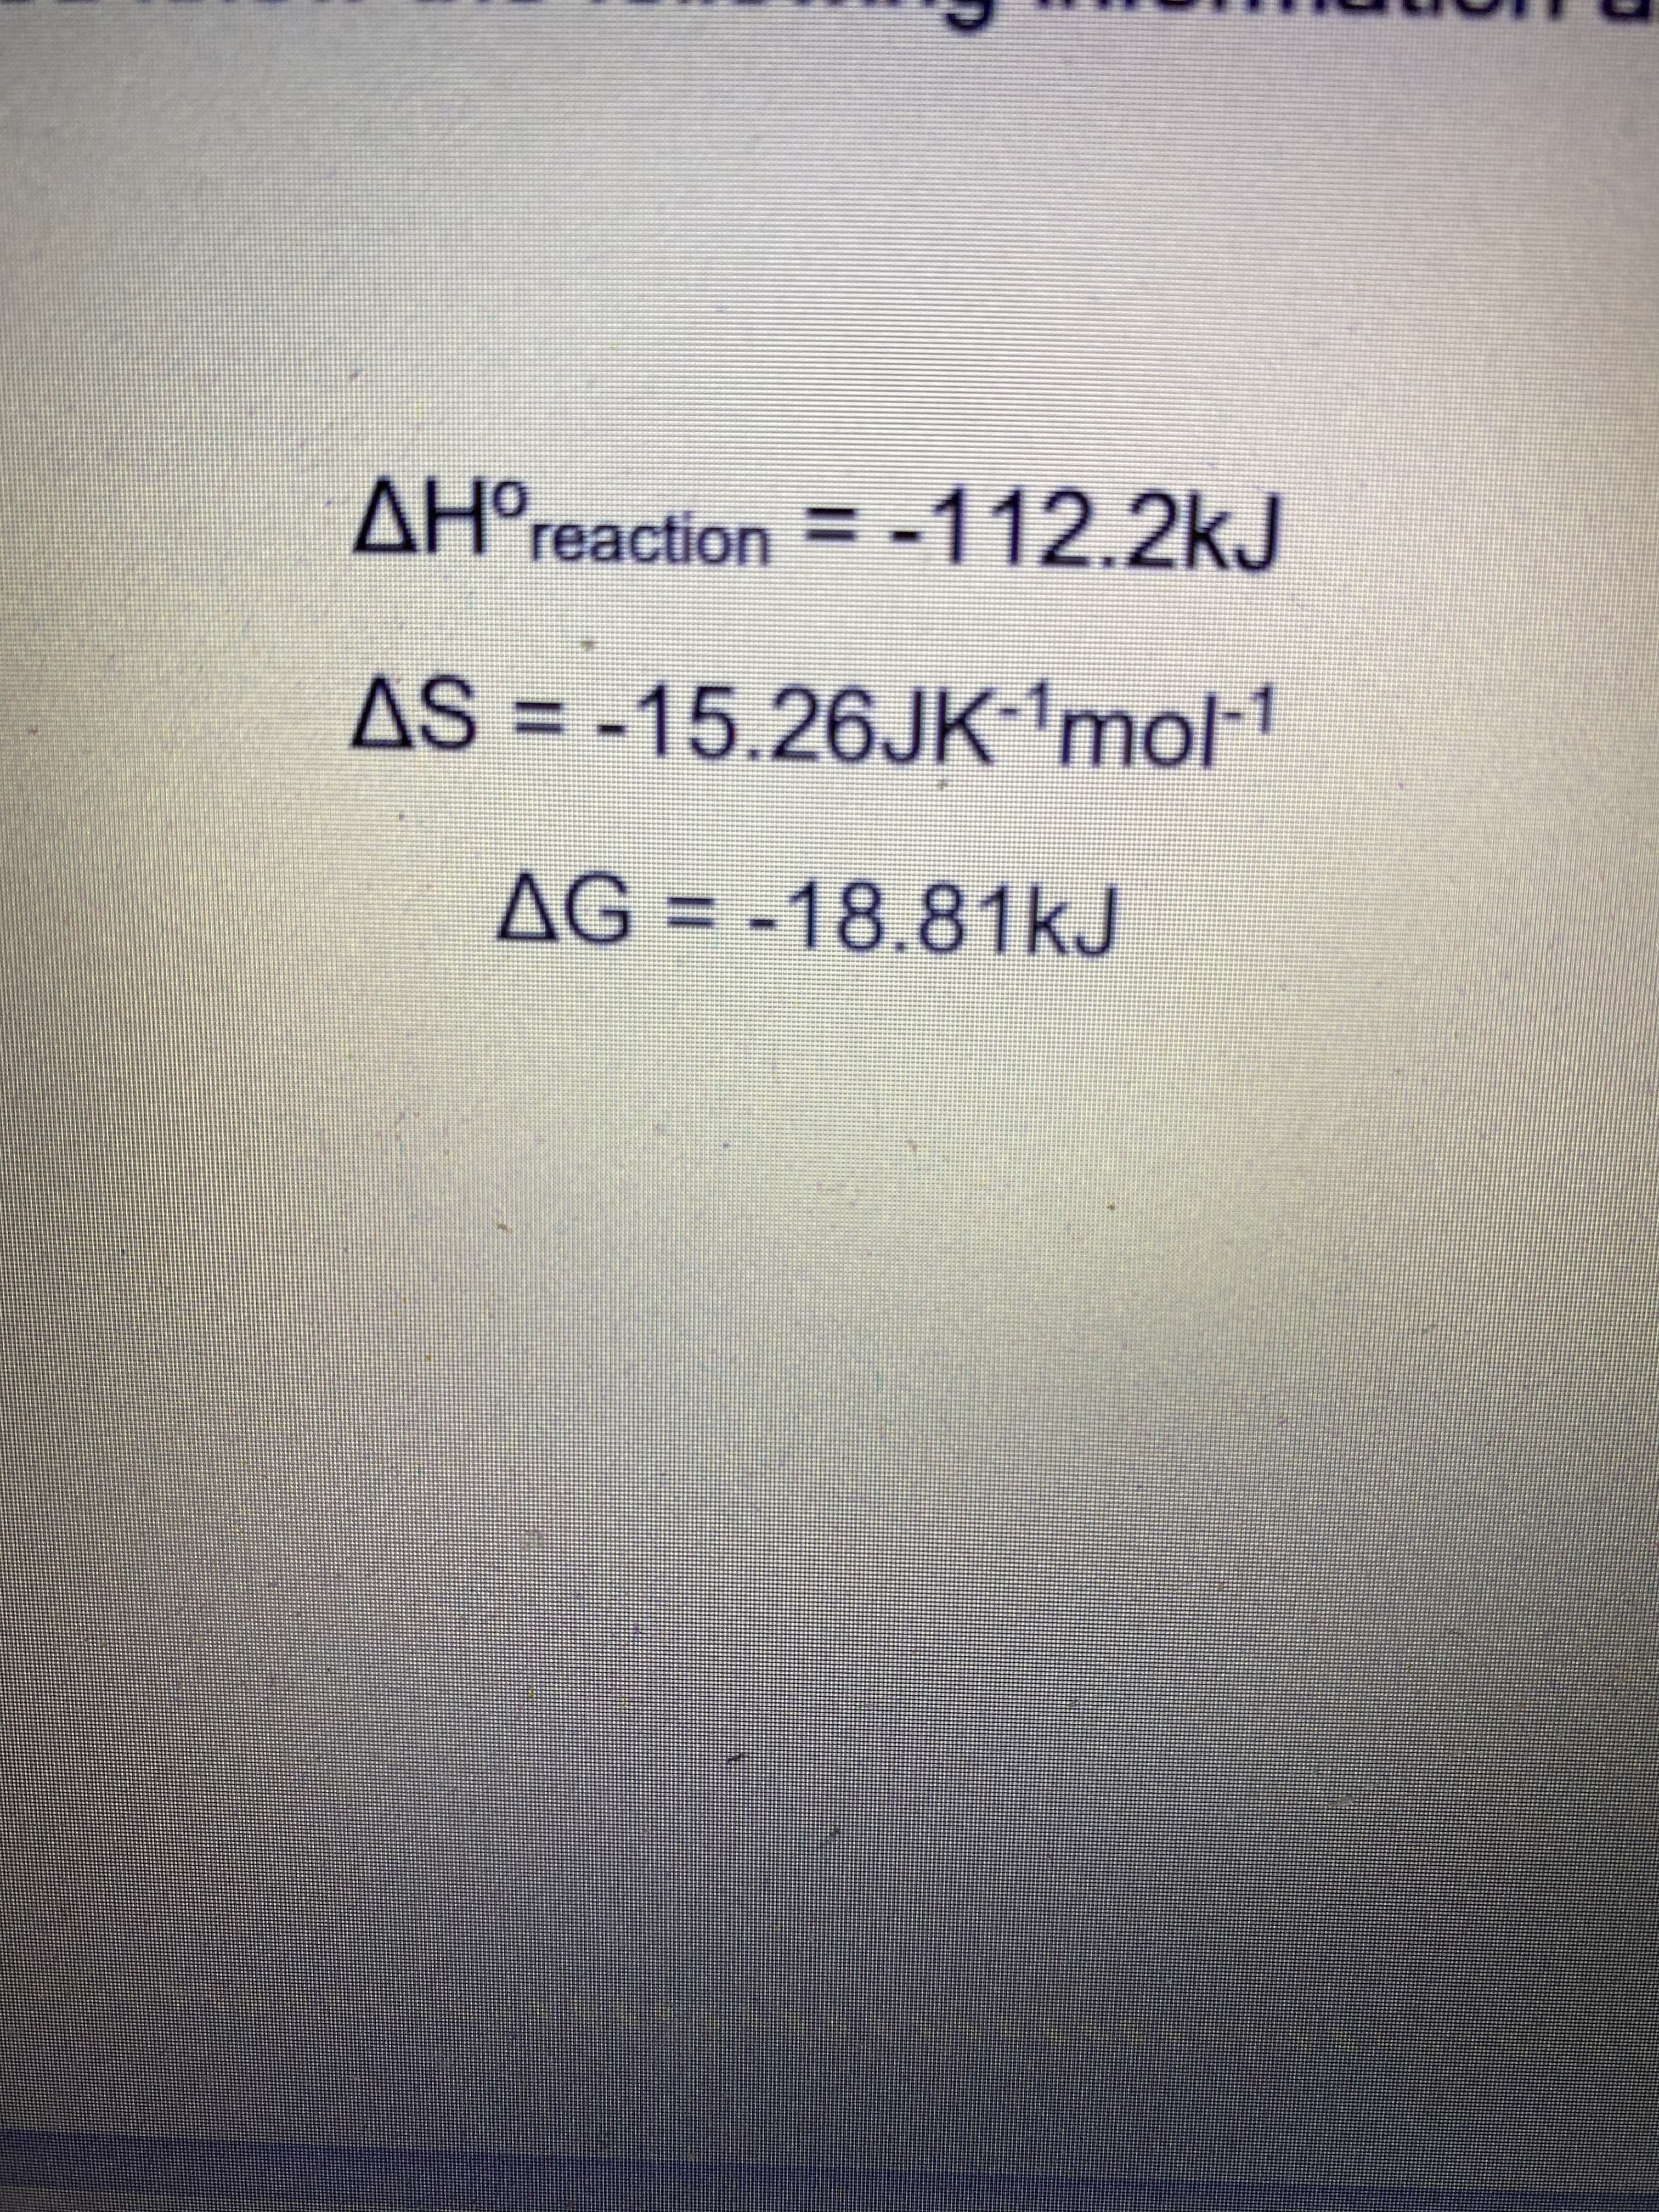 AH°reaction = -112.2kJ
ΔΗΟ
AS = --1
15.26JK mol
AG = -18.81kJ
%3D
